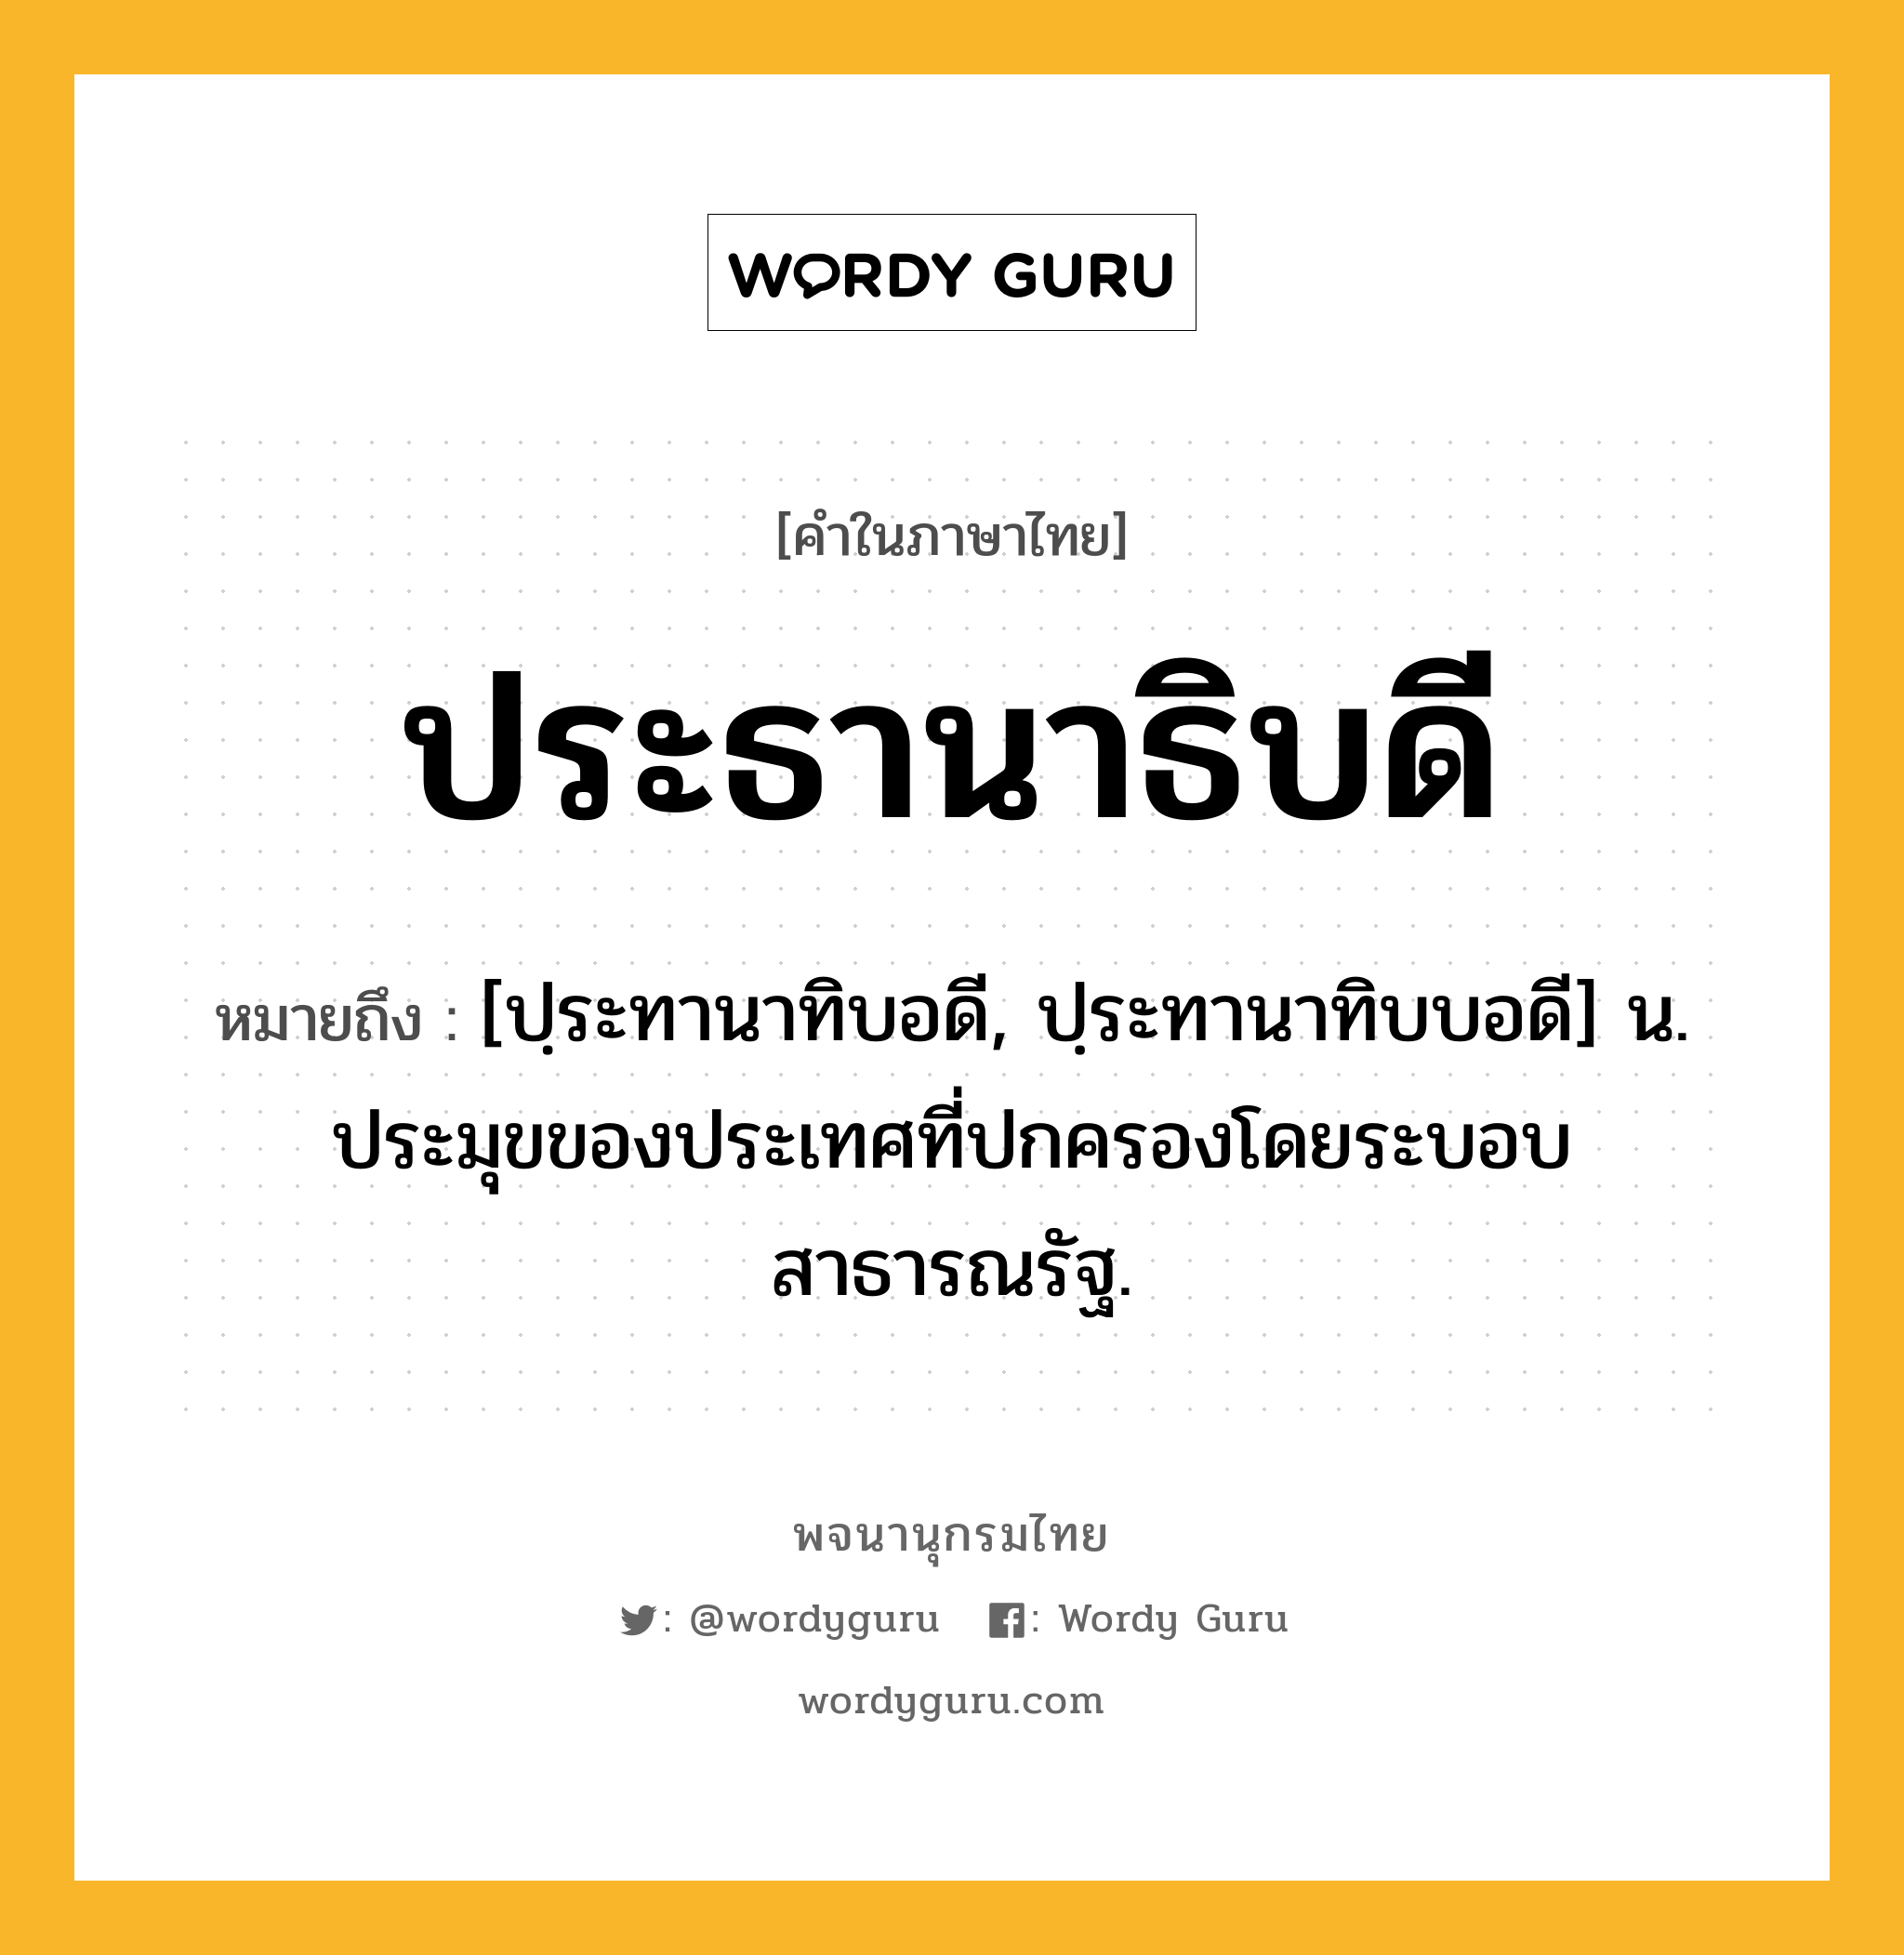 ประธานาธิบดี ความหมาย หมายถึงอะไร?, คำในภาษาไทย ประธานาธิบดี หมายถึง [ปฺระทานาทิบอดี, ปฺระทานาทิบบอดี] น. ประมุขของประเทศที่ปกครองโดยระบอบสาธารณรัฐ.